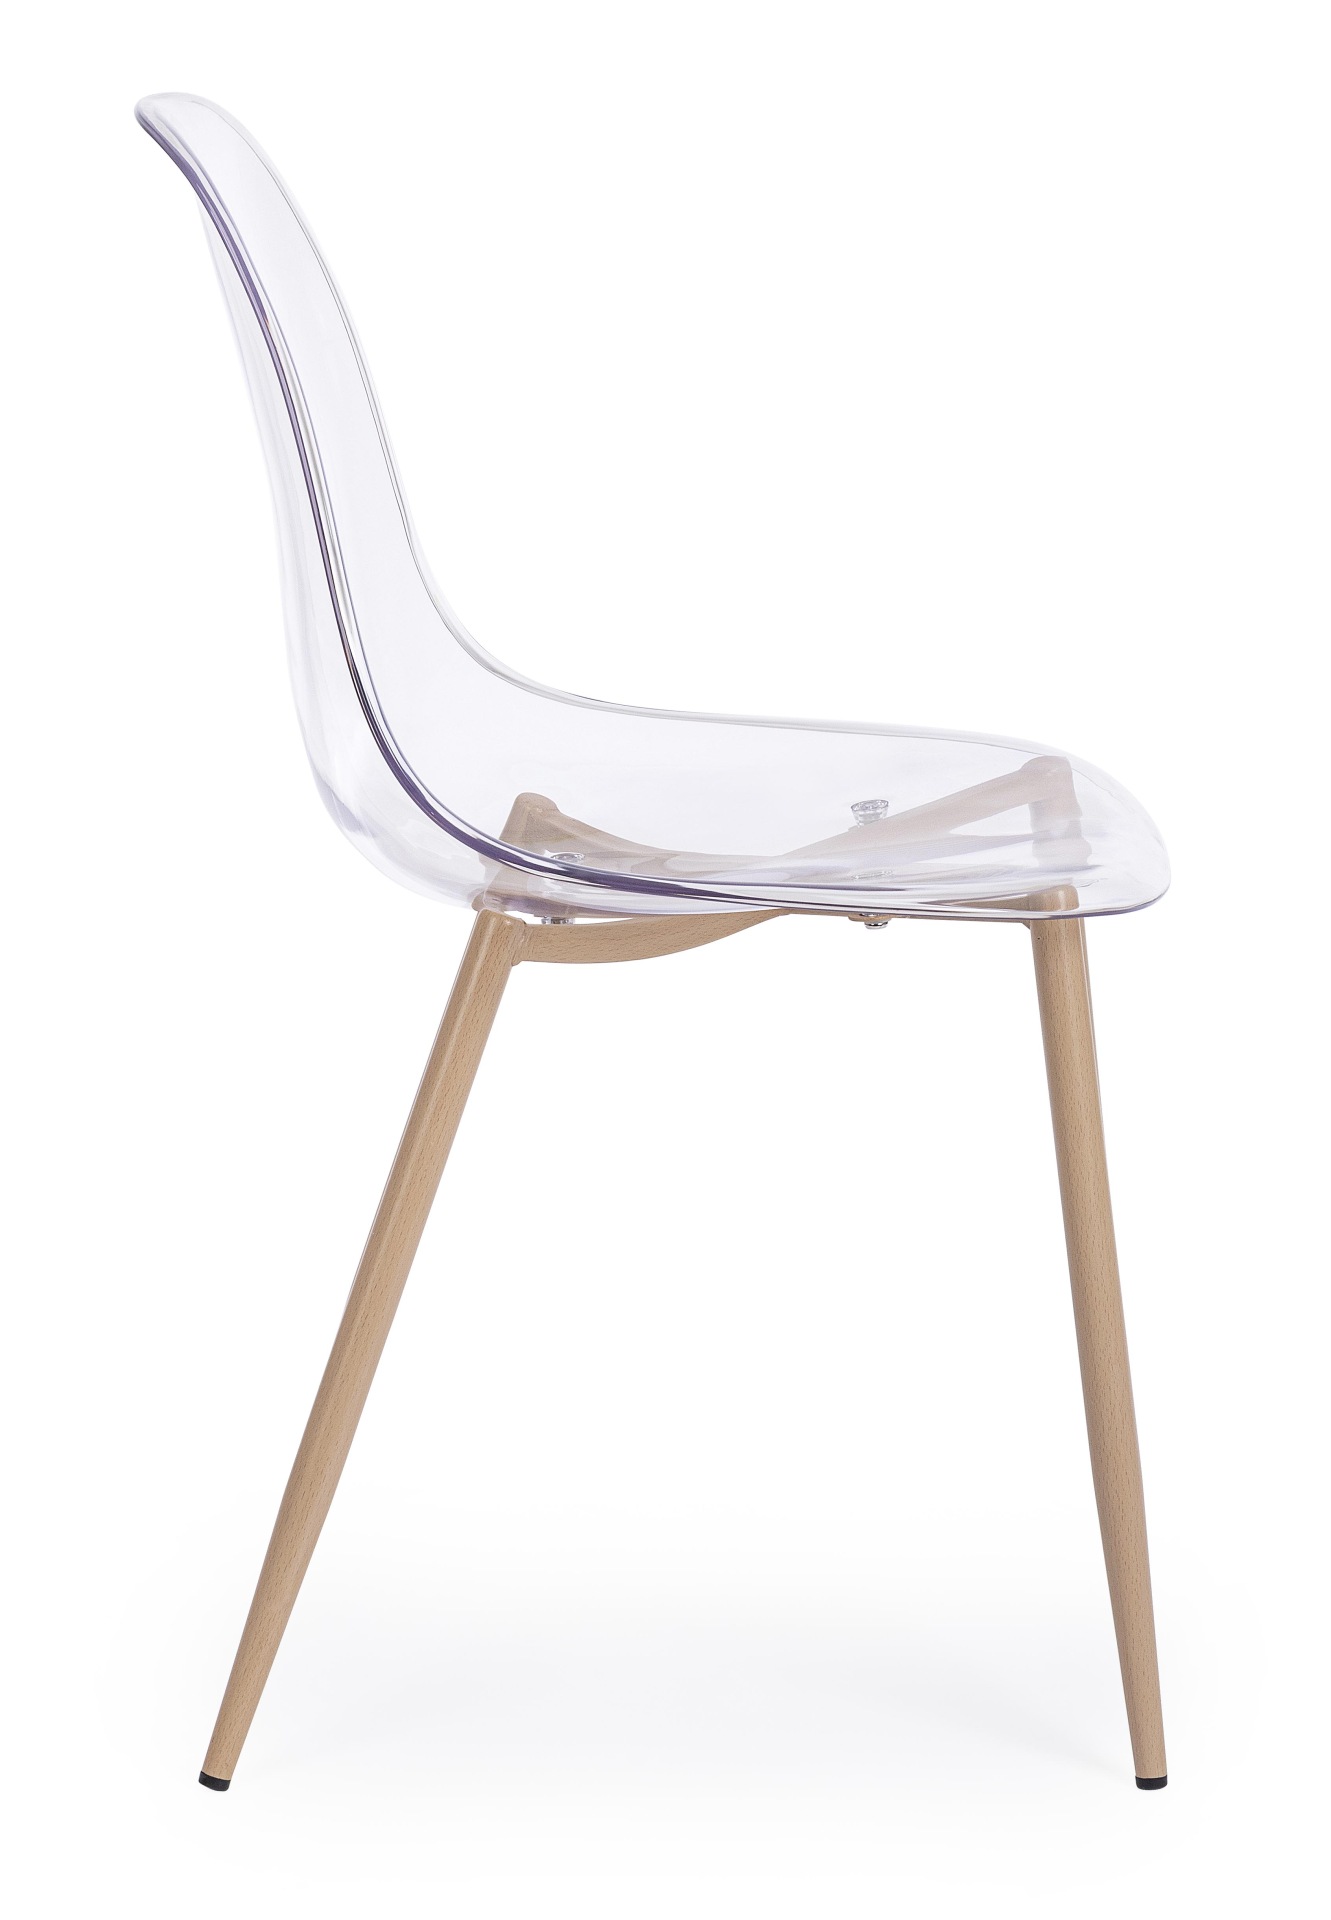 Der Stuhl Mandy überzeugt mit seinem modernem Design. Gefertigt wurde der Stuhl aus Kunststoff, welcher einen transparenten Farbton besitzt. Das Gestell ist aus Metall, welches eine Holz-Optik besitzt. Die Sitzhöhe des Stuhls ist 45 cm.